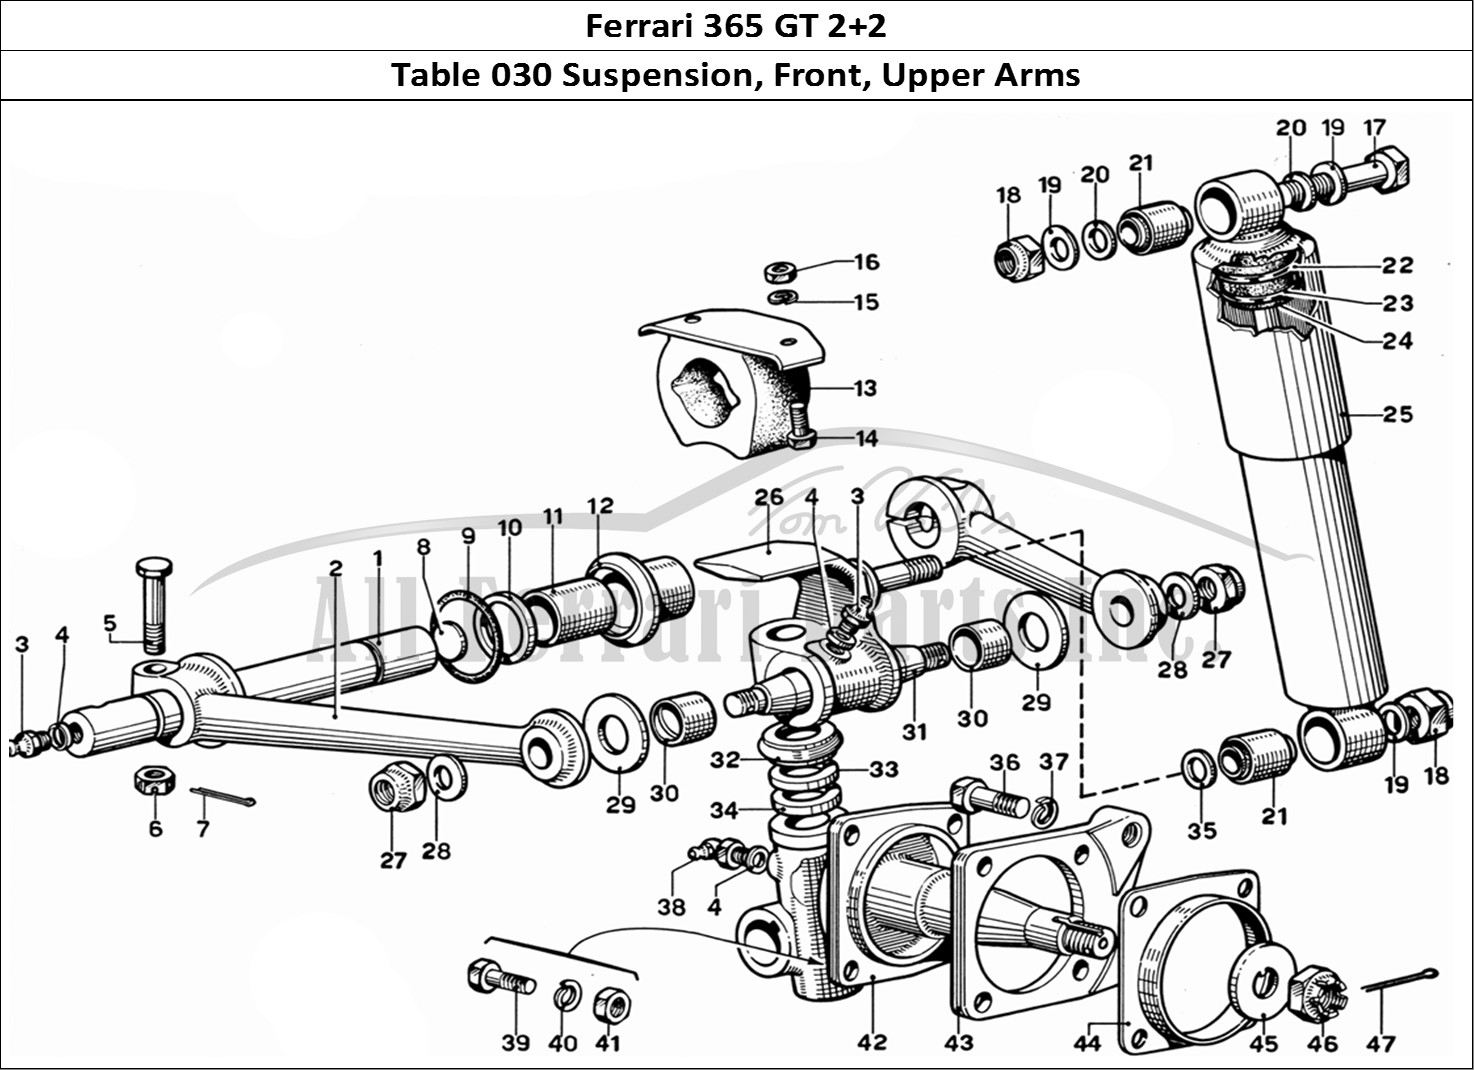 Ferrari Parts Ferrari 365 GT 2+2 (Mechanical) Page 030 Front Wheel Suspension -